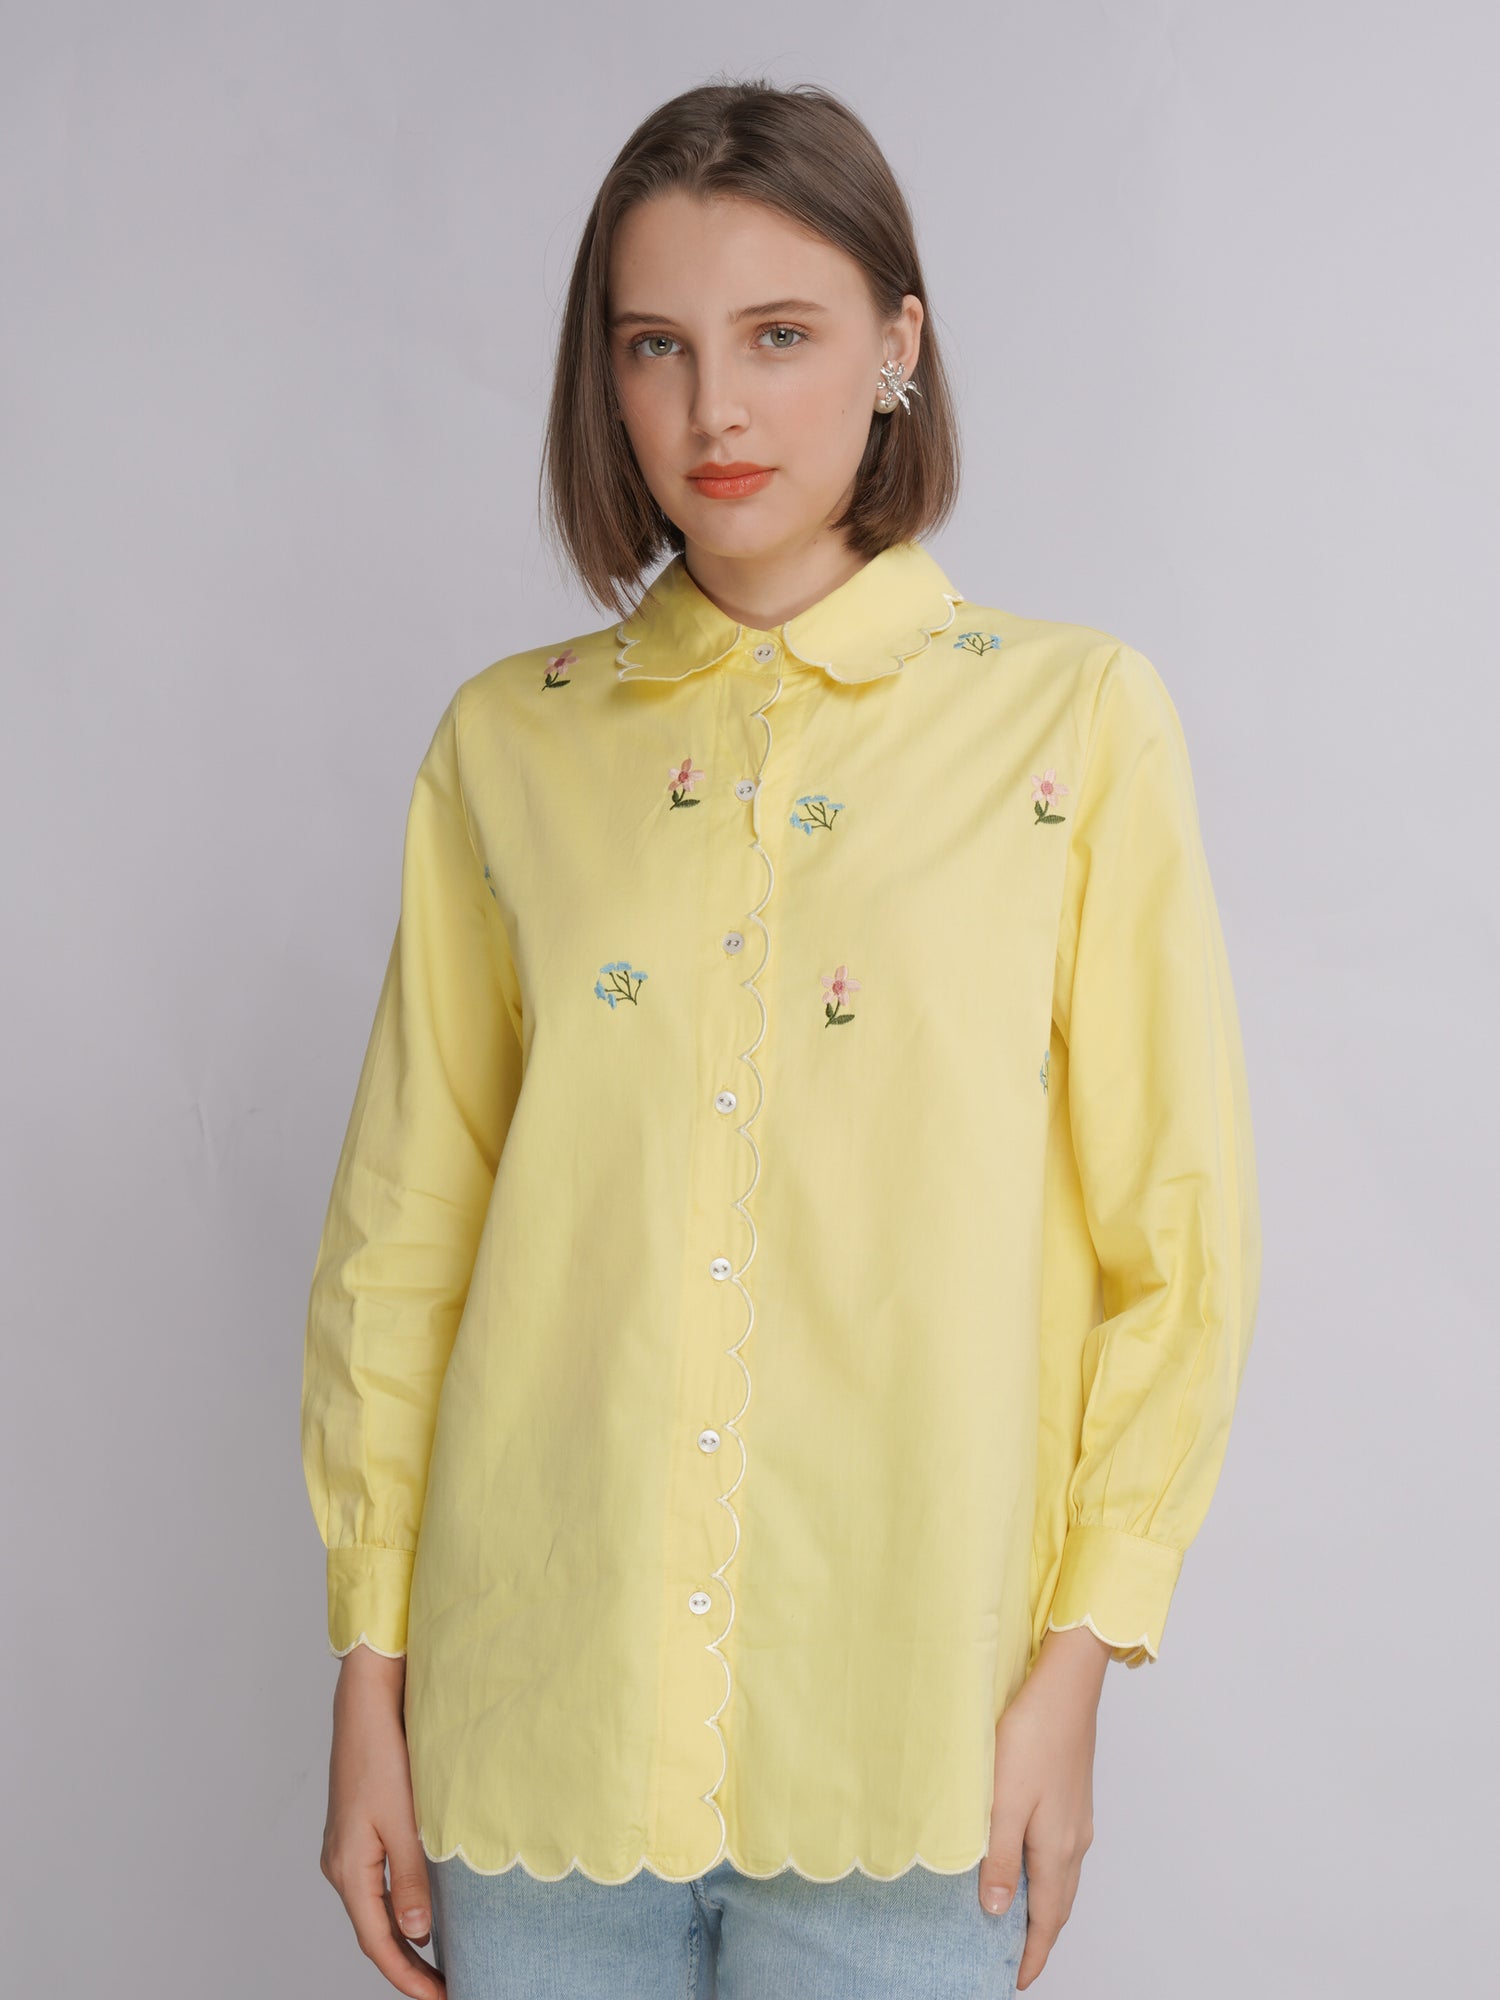 Zeinna Shirt Butter Yellow